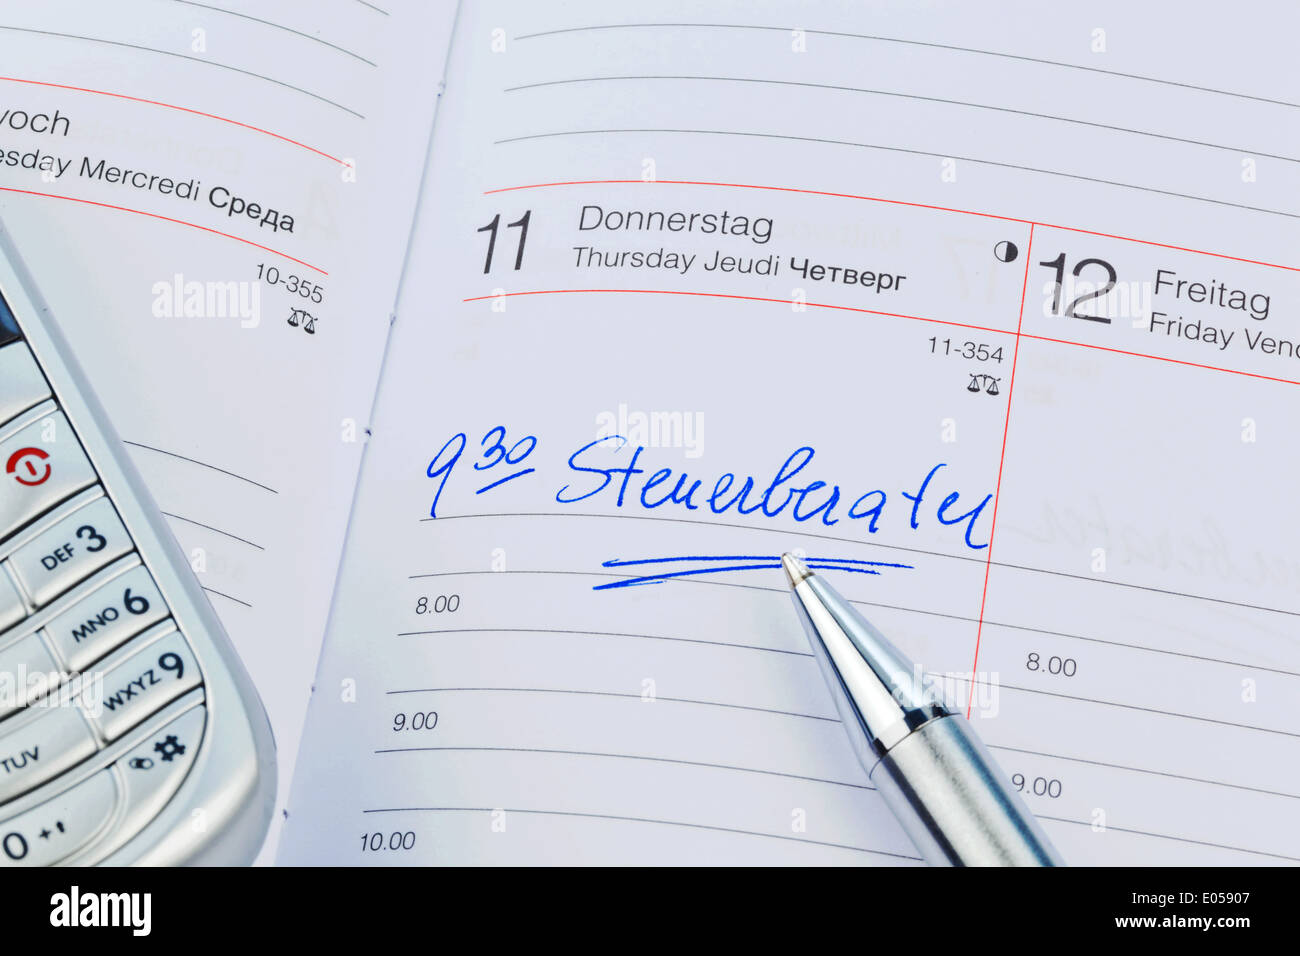 Un appuntamento viene messo giù in un calendario: consulente fiscale, Ein Termin ist in einem Kalender eingetragen: Steuerberater Foto Stock